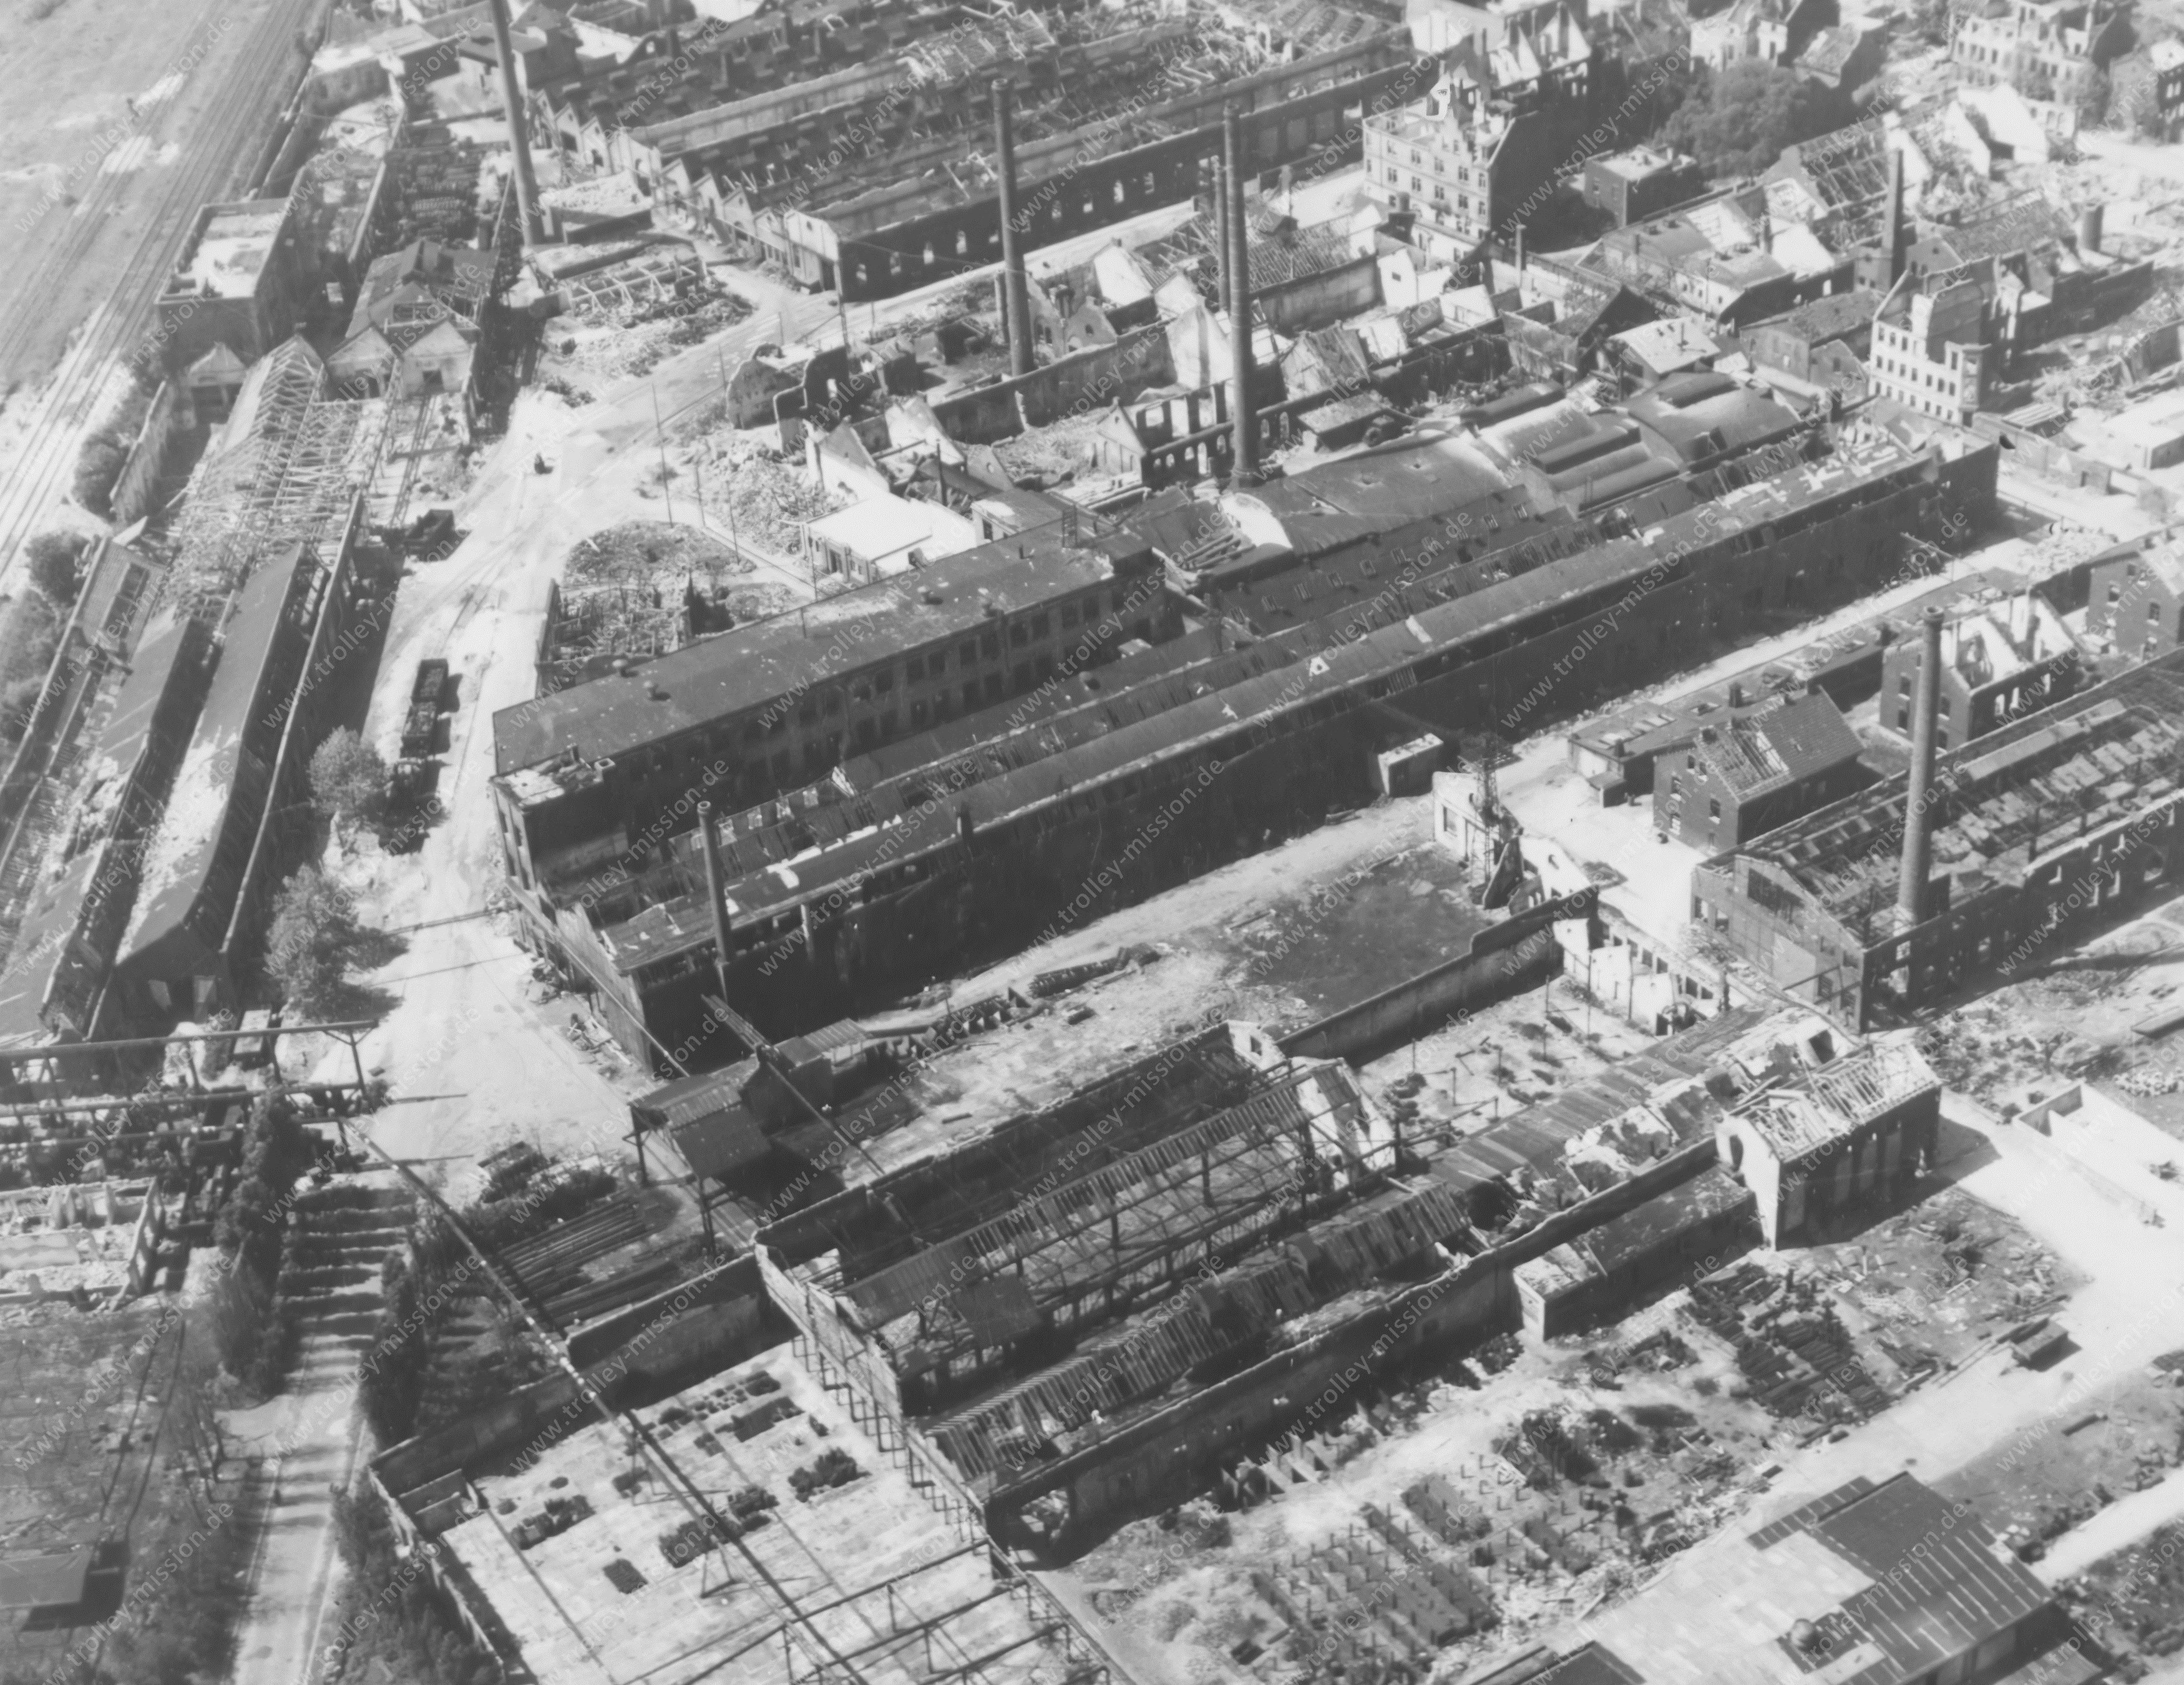 Fabrik der Klöckner-Humboldt-Deutz AG in Köln an der Deutz-Mülheimer-Straße und Auenweg nach dem Zweiten Weltkrieg